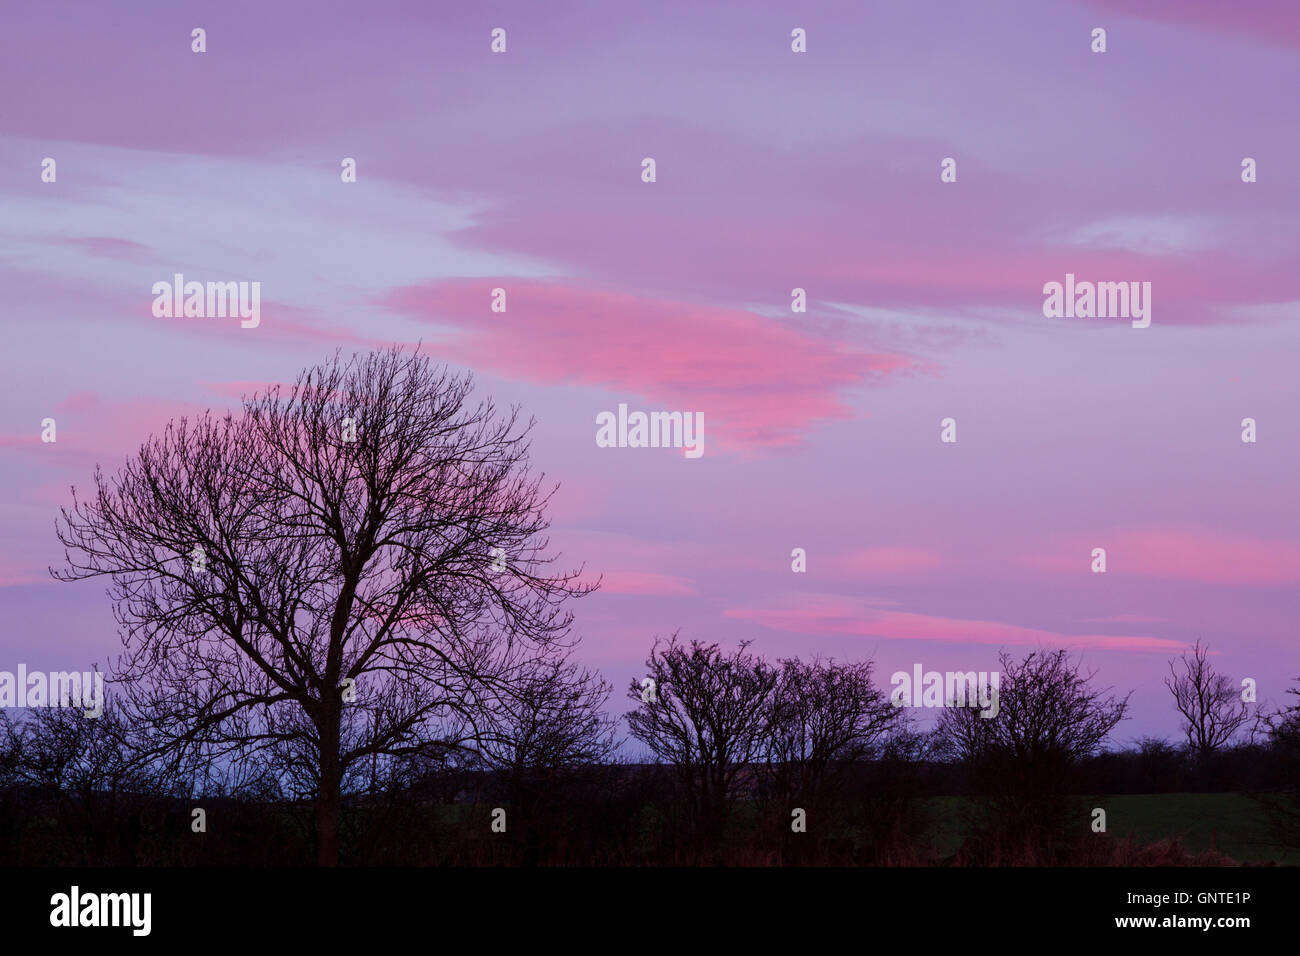 Eine Reihe von Bäumen in der Silhouette unter einem bunten blau und rosa Himmel bei Tagesanbruch Stockfoto